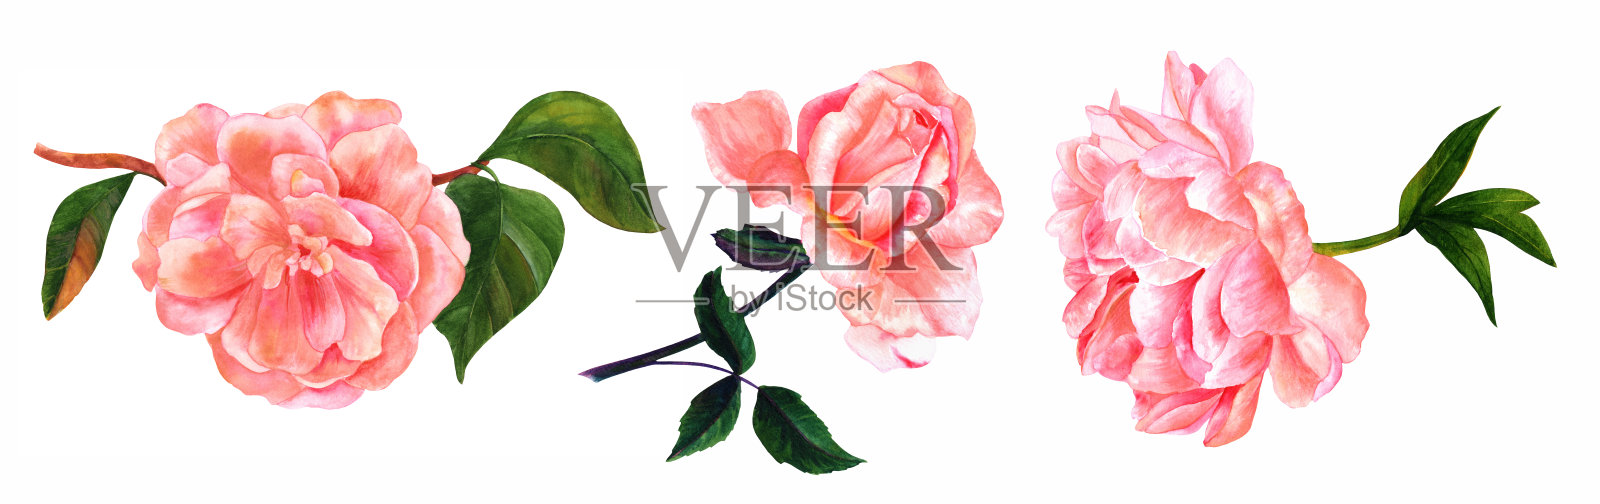 一套复古风格的粉红色水彩花在白色插画图片素材